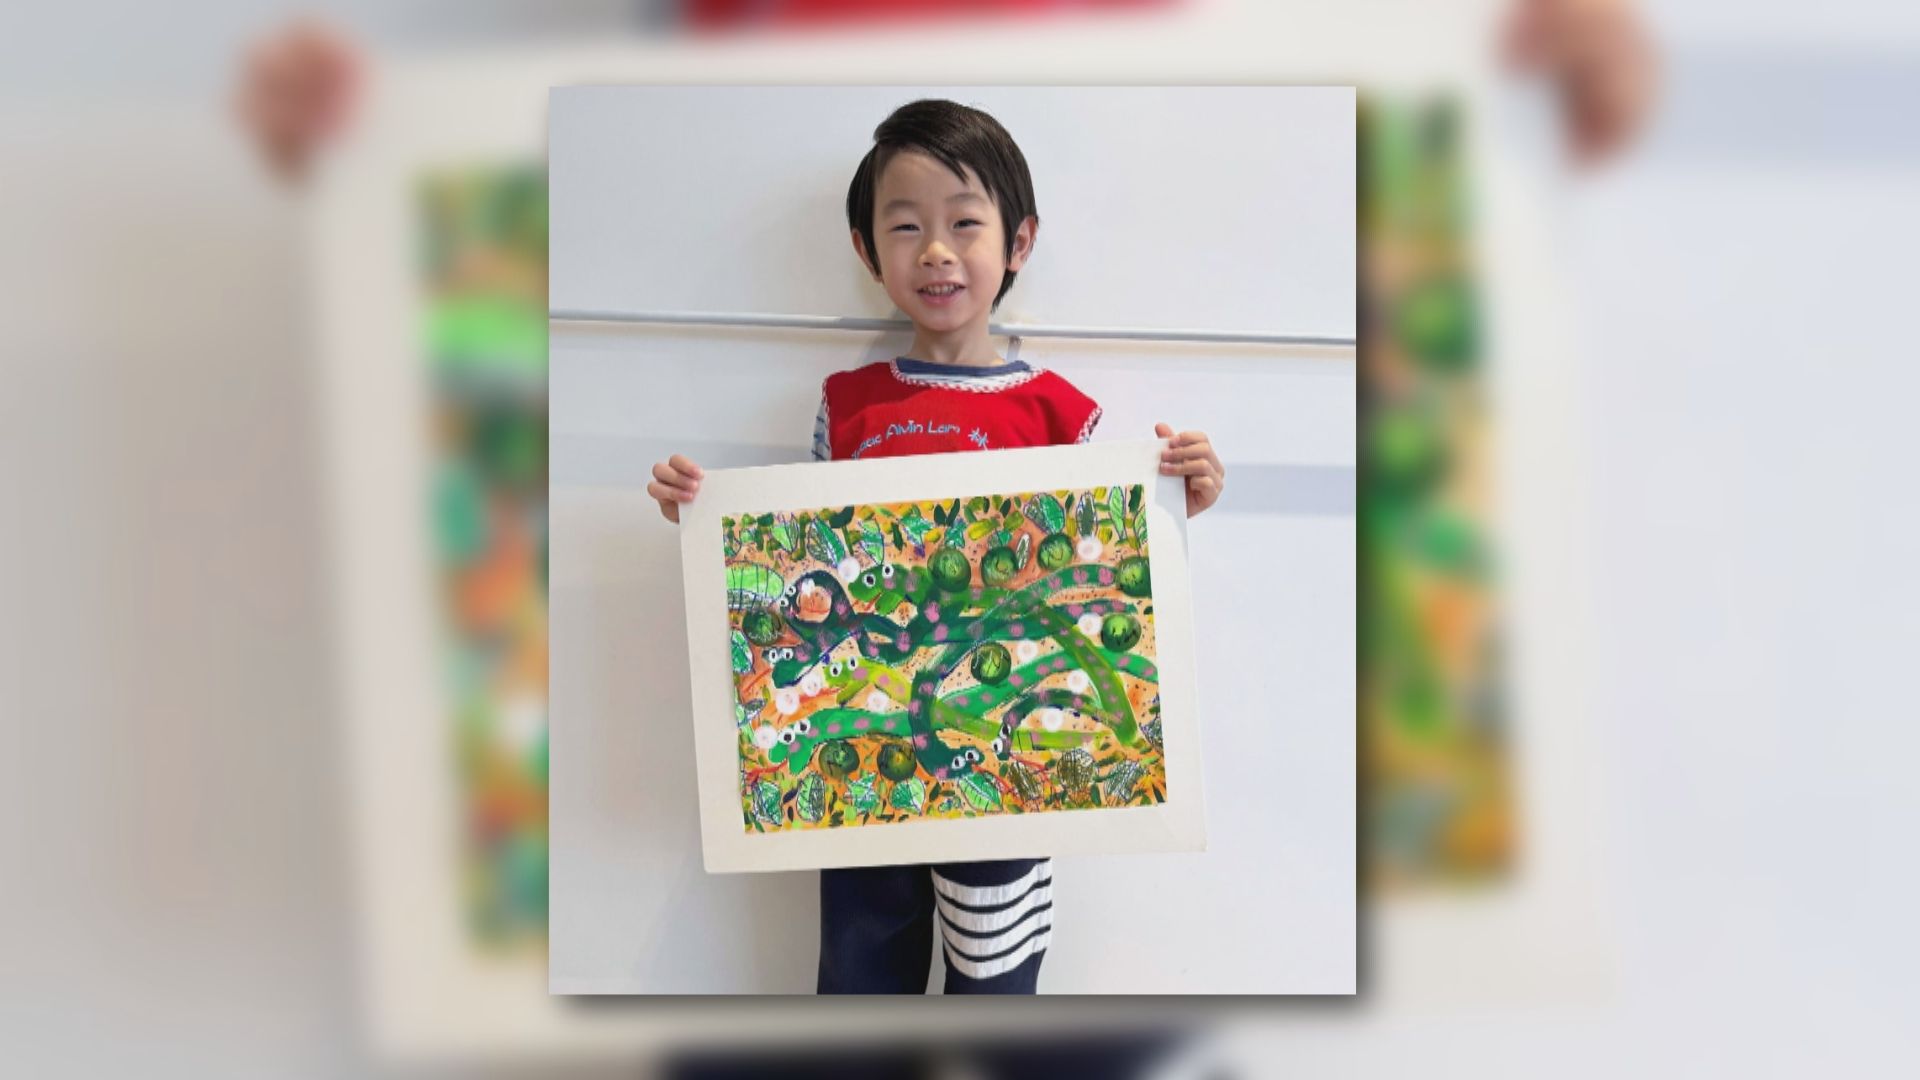 4歲港童奪世界野生動植物日藝術大賽冠軍 成年紀最小得獎者